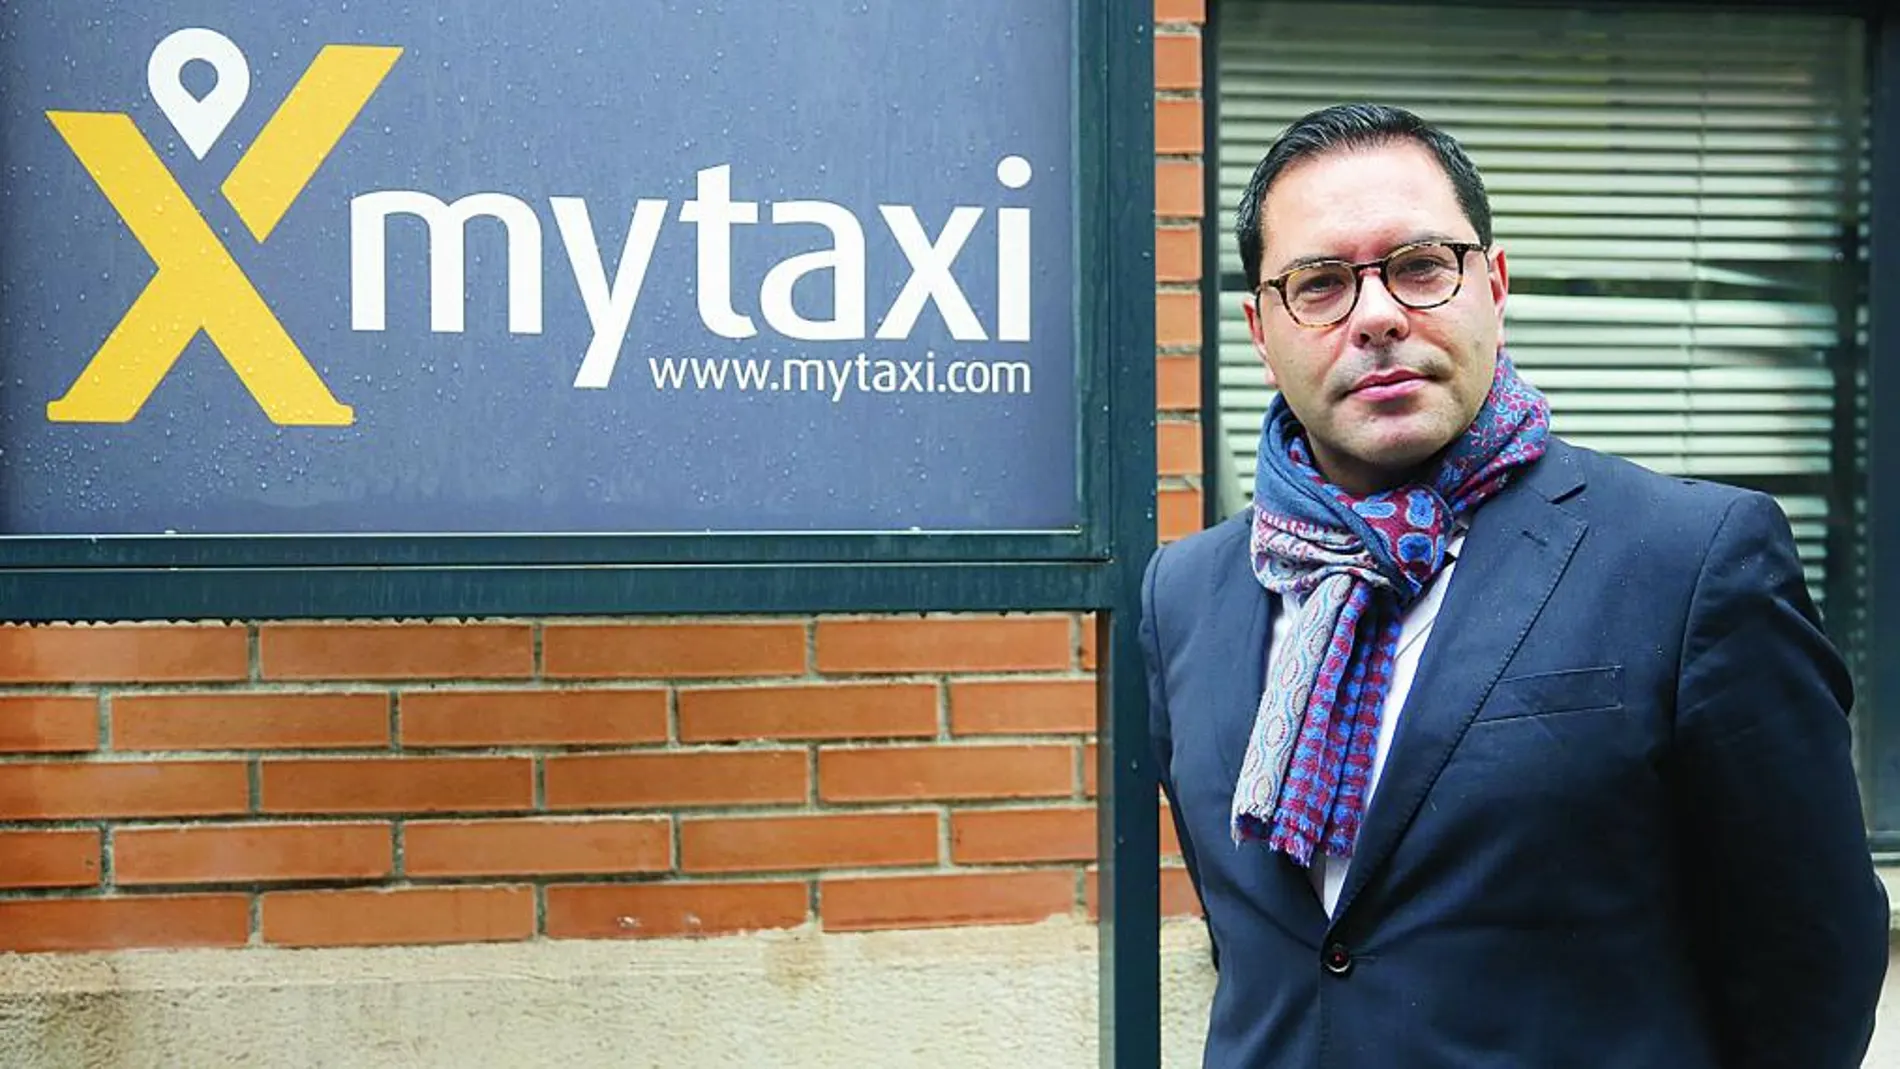 Antonio Cantalapiedra, CEO Mytaxi